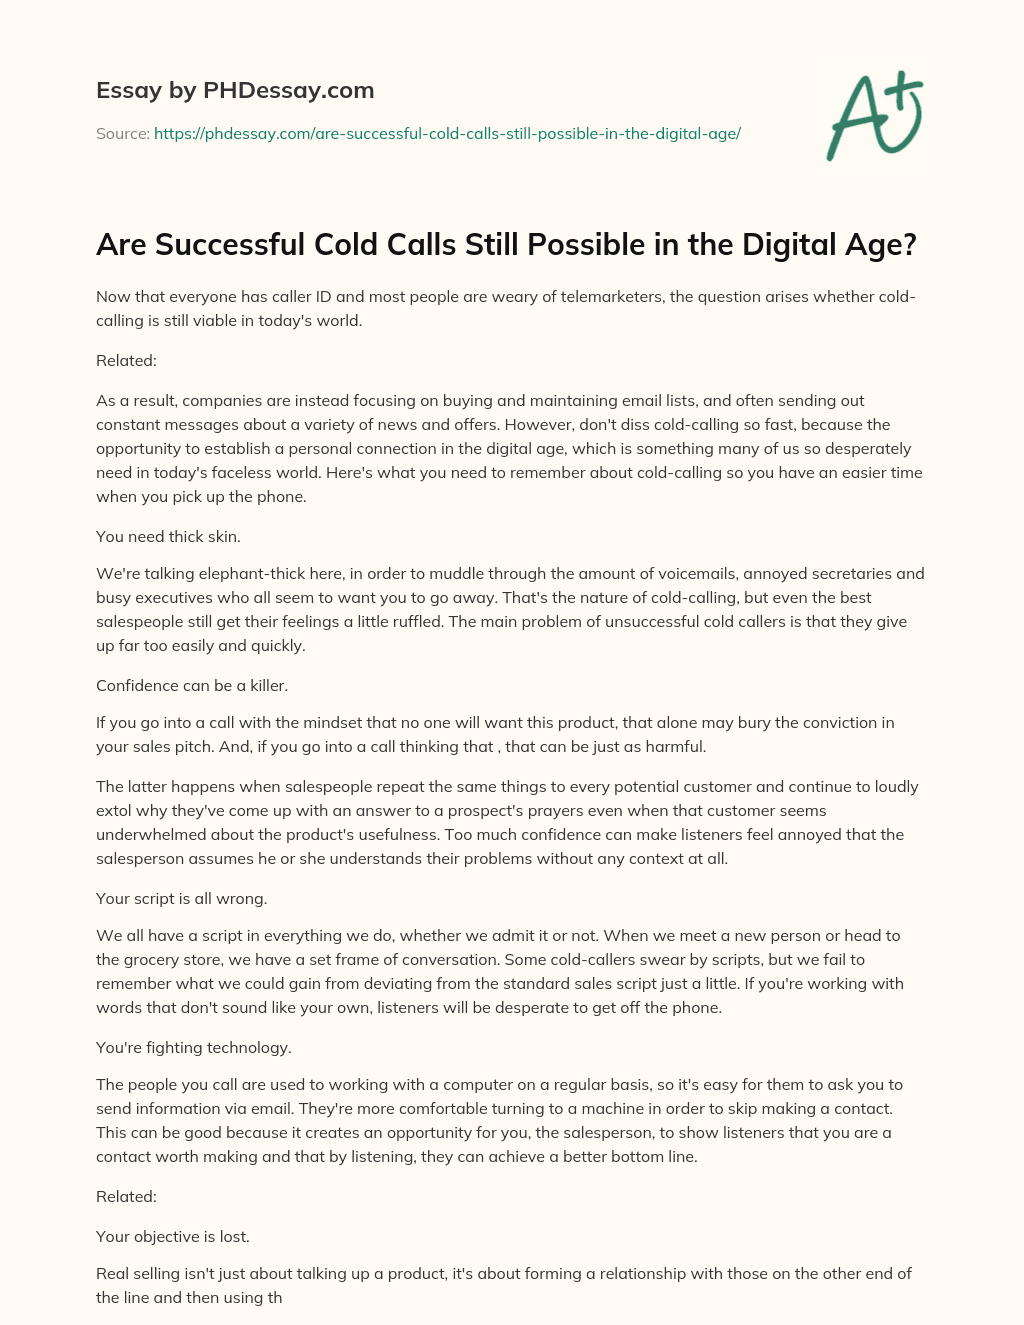 Are Successful Cold Calls Still Possible in the Digital Age? essay